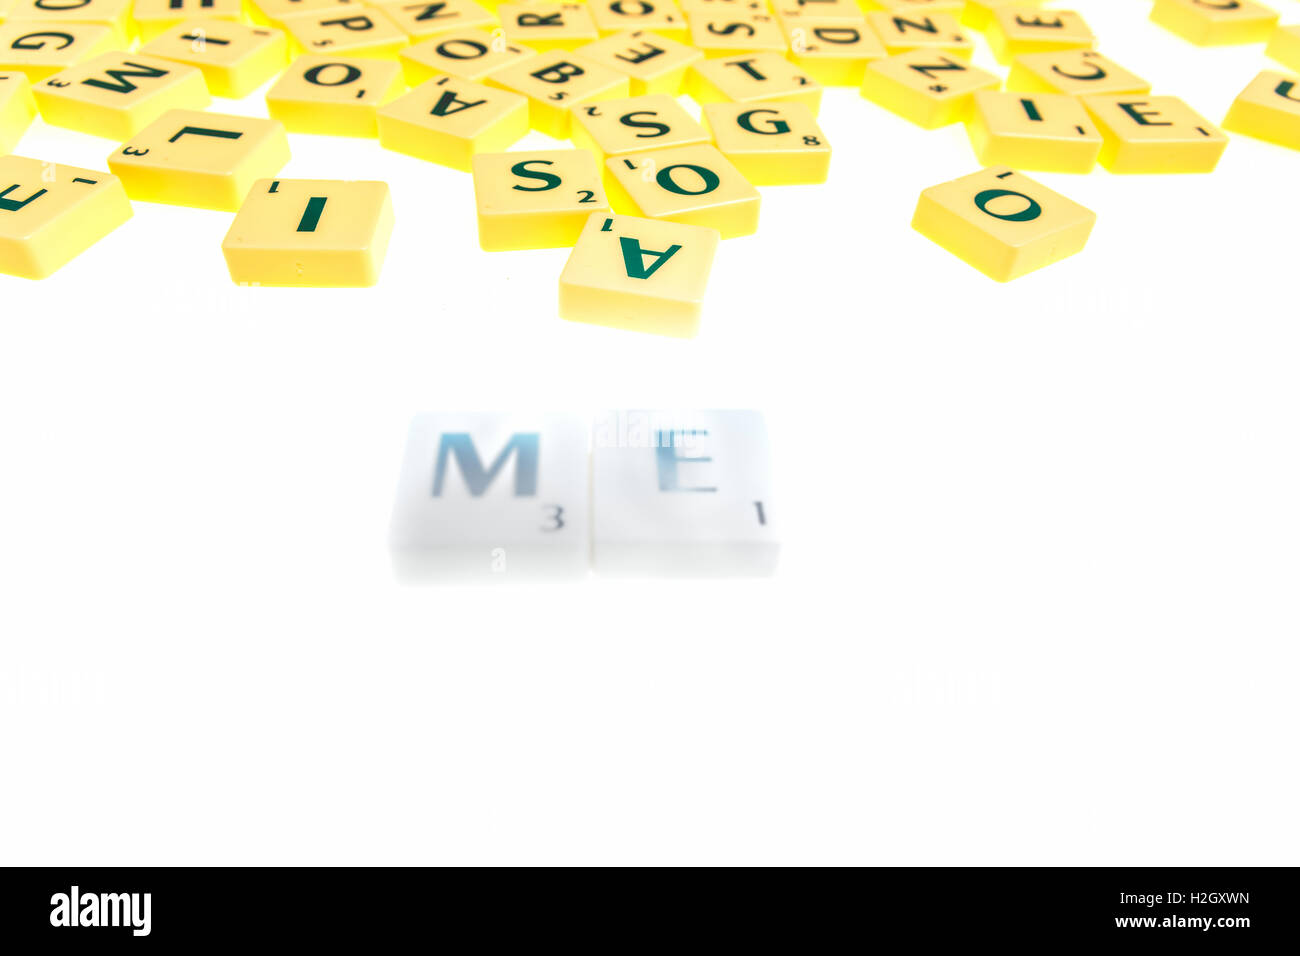 juego de mesa azulejos letras para formar palabras y frases Fotografía de stock - Alamy